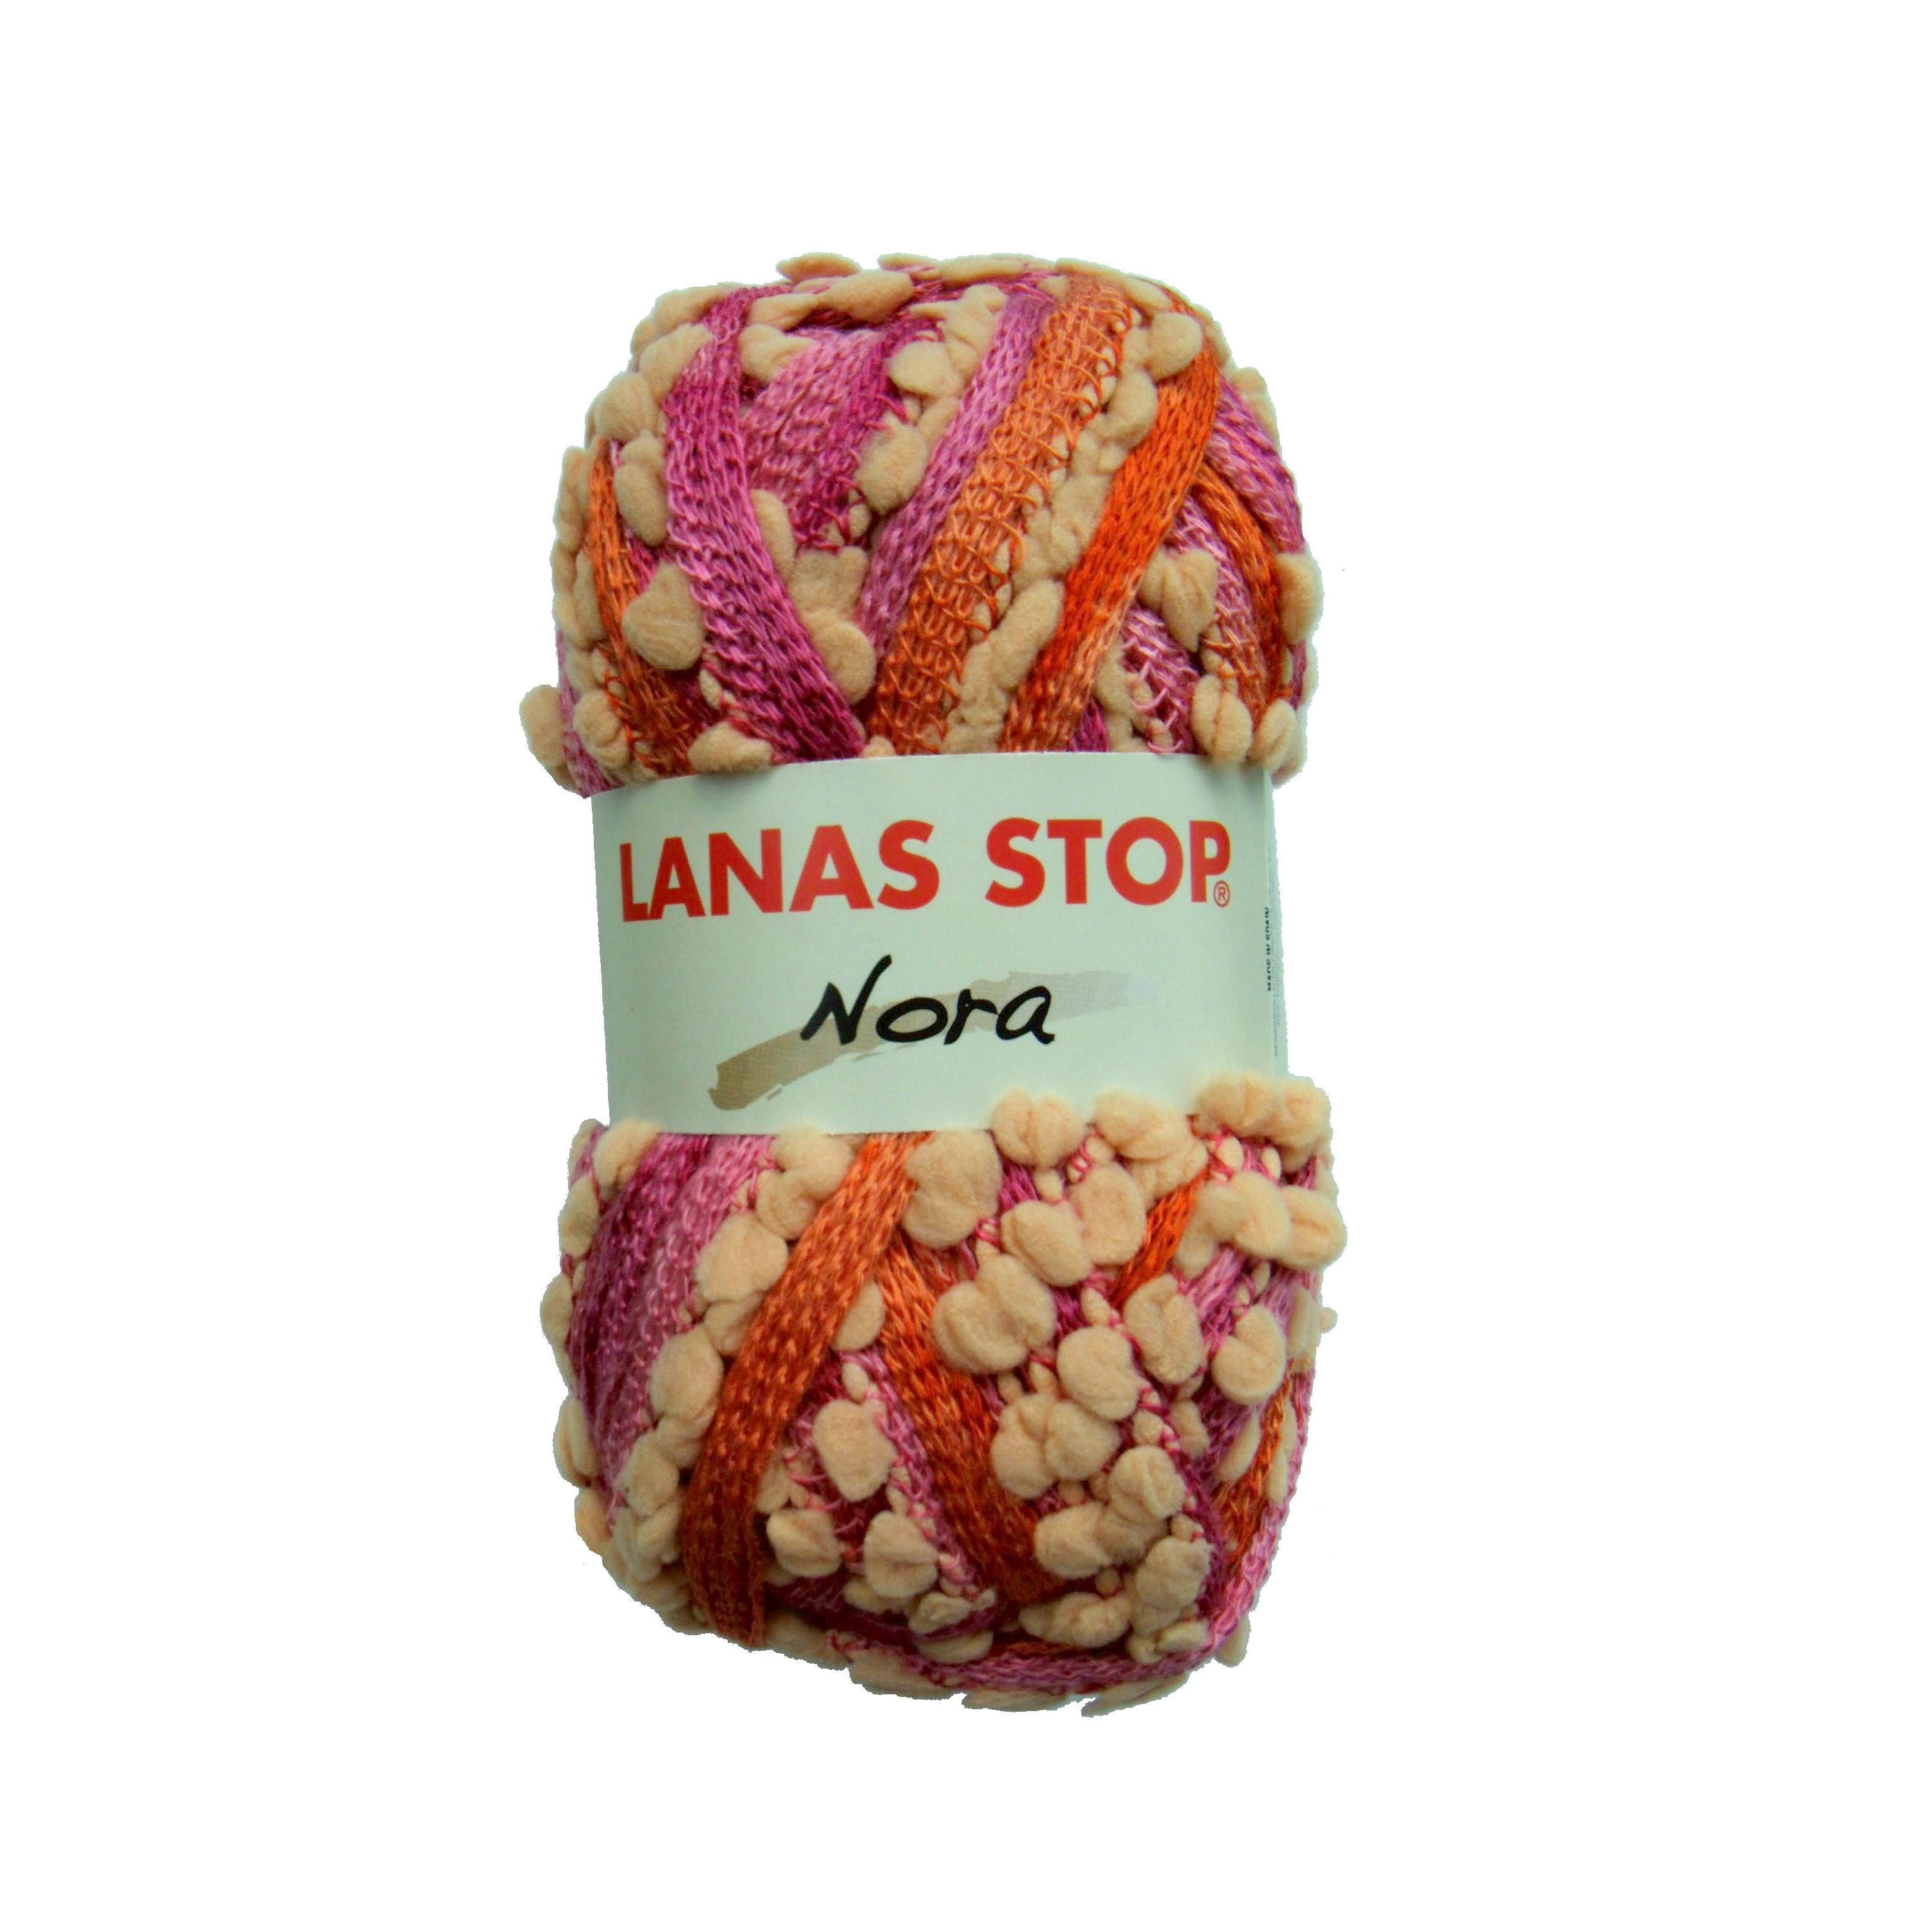 Lanas Stop FINLAND - Lanas Garla